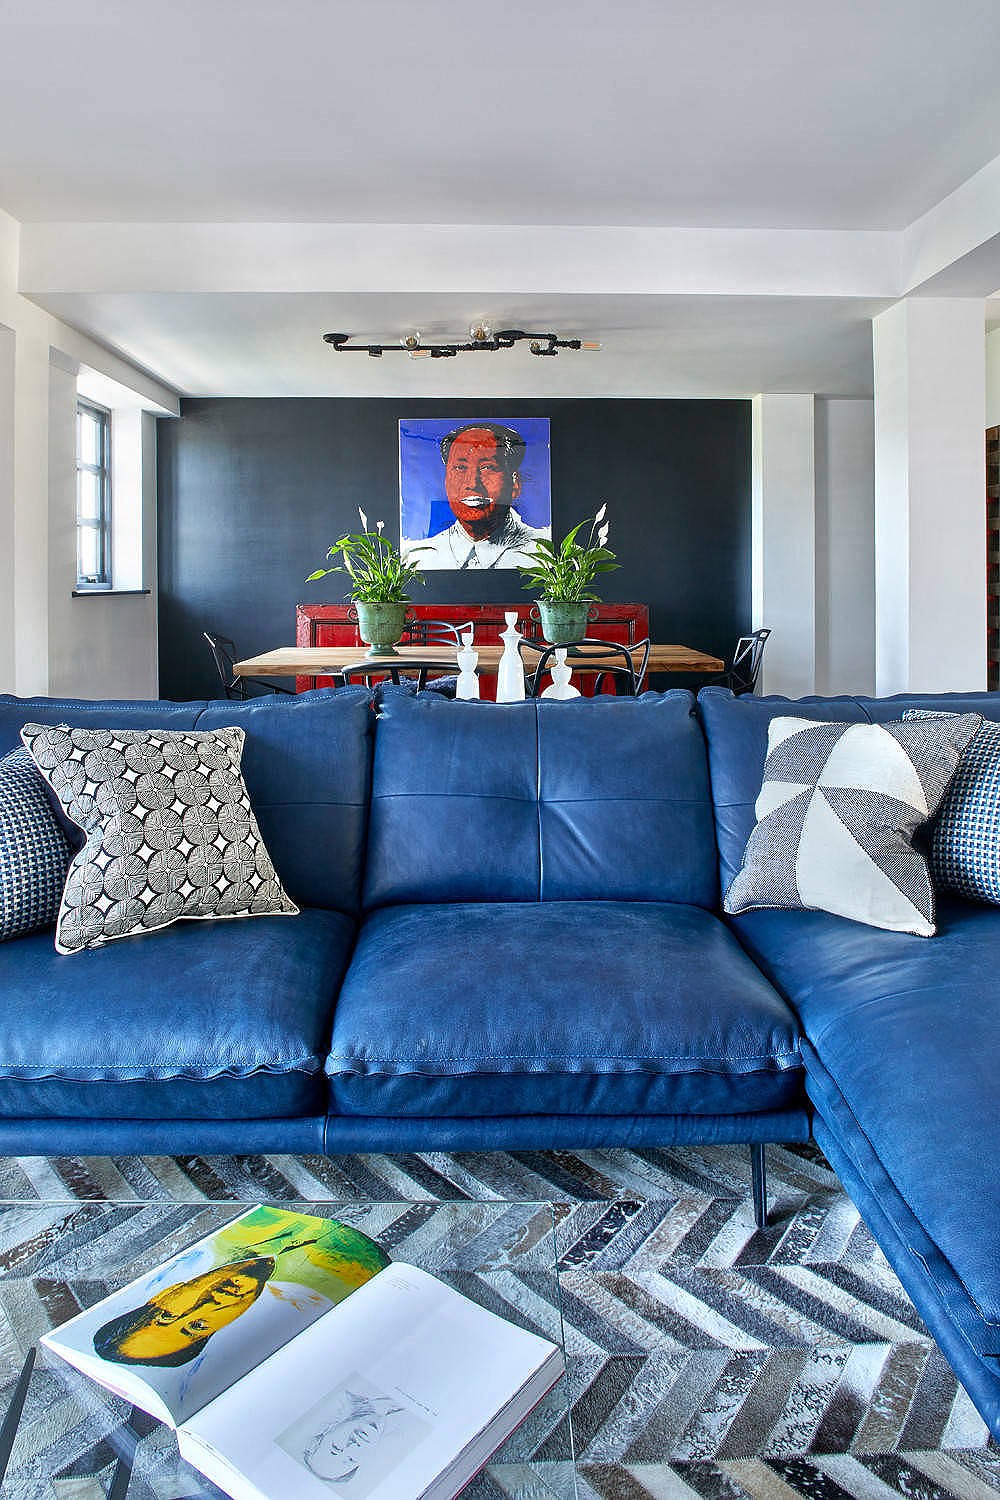 Trung tâm của căn hộ nhỏ là bộ sofa tông xanh dương 